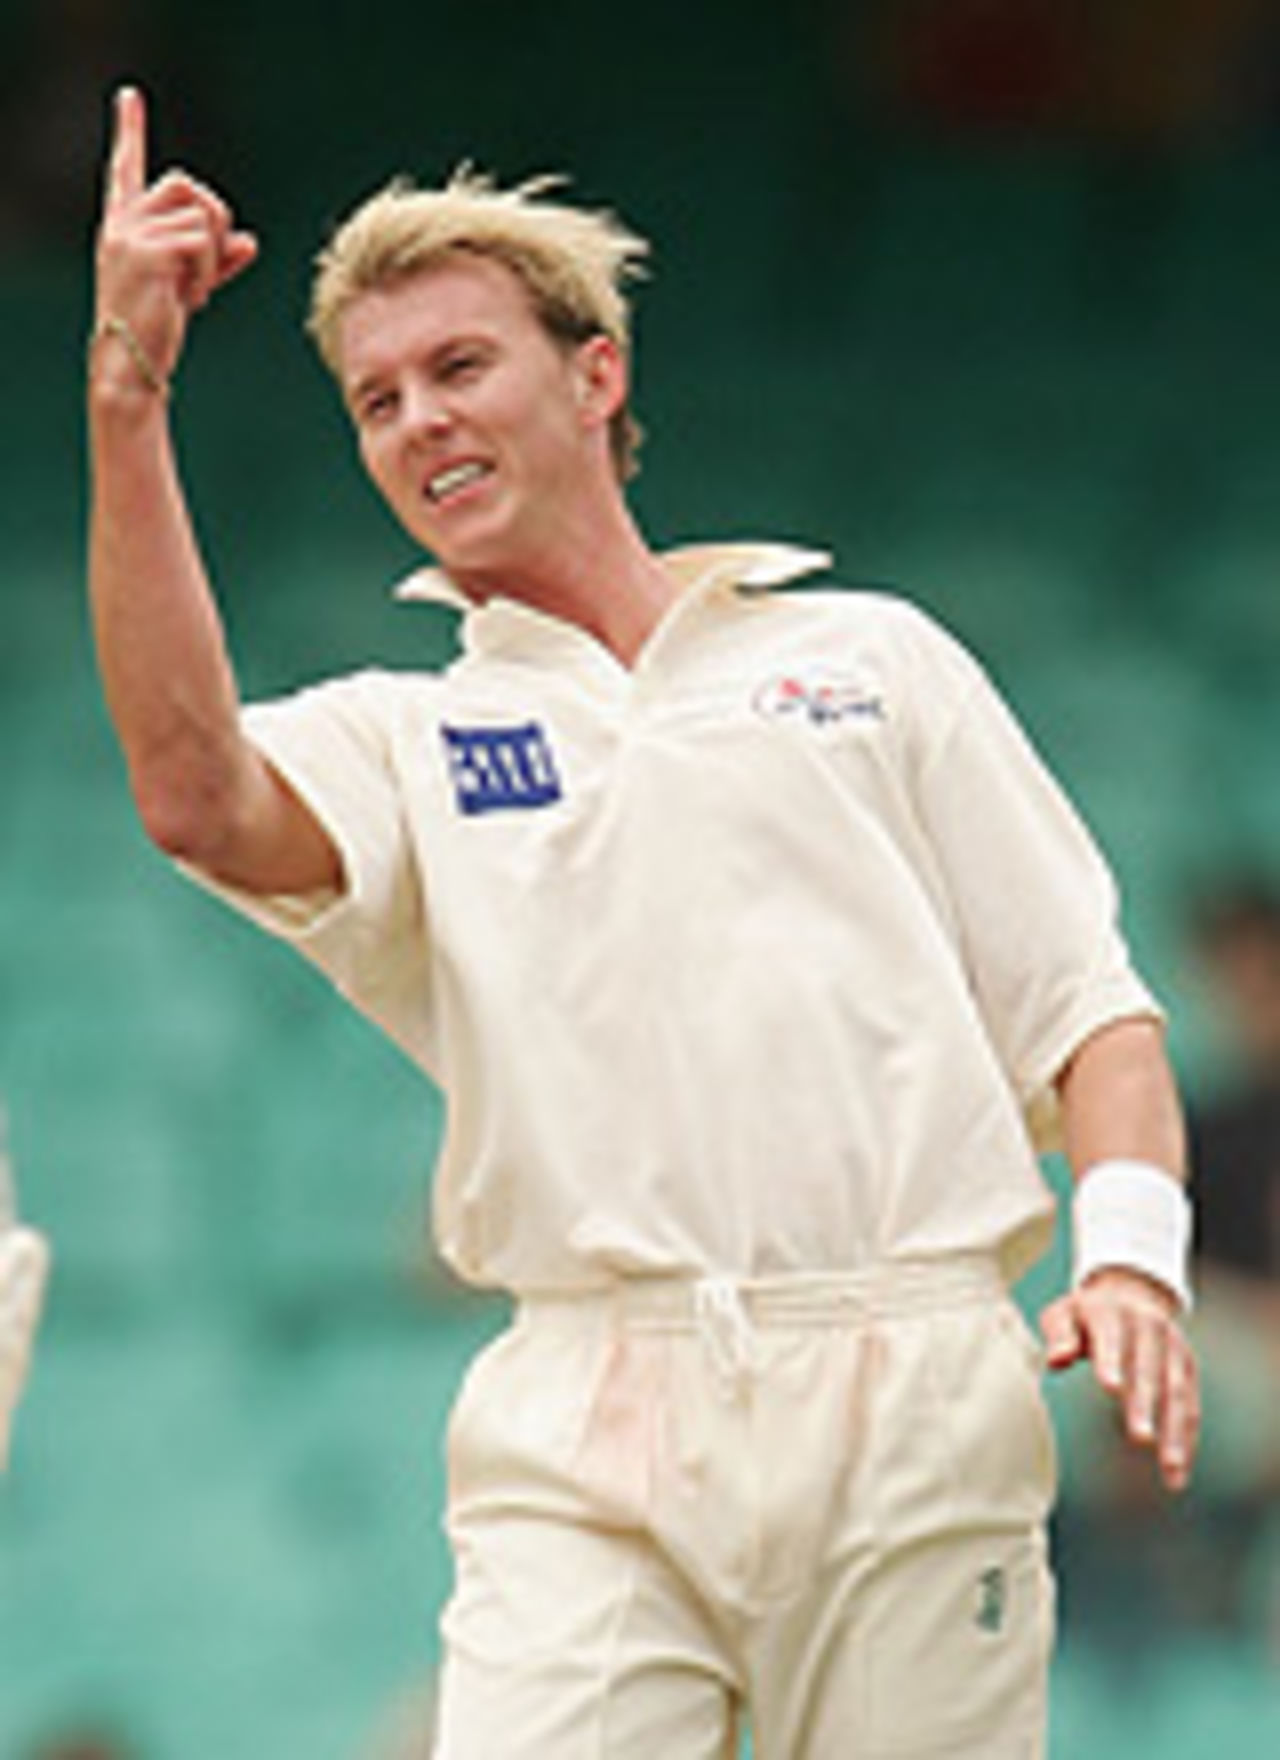 Brett Lee celebrates a wicket